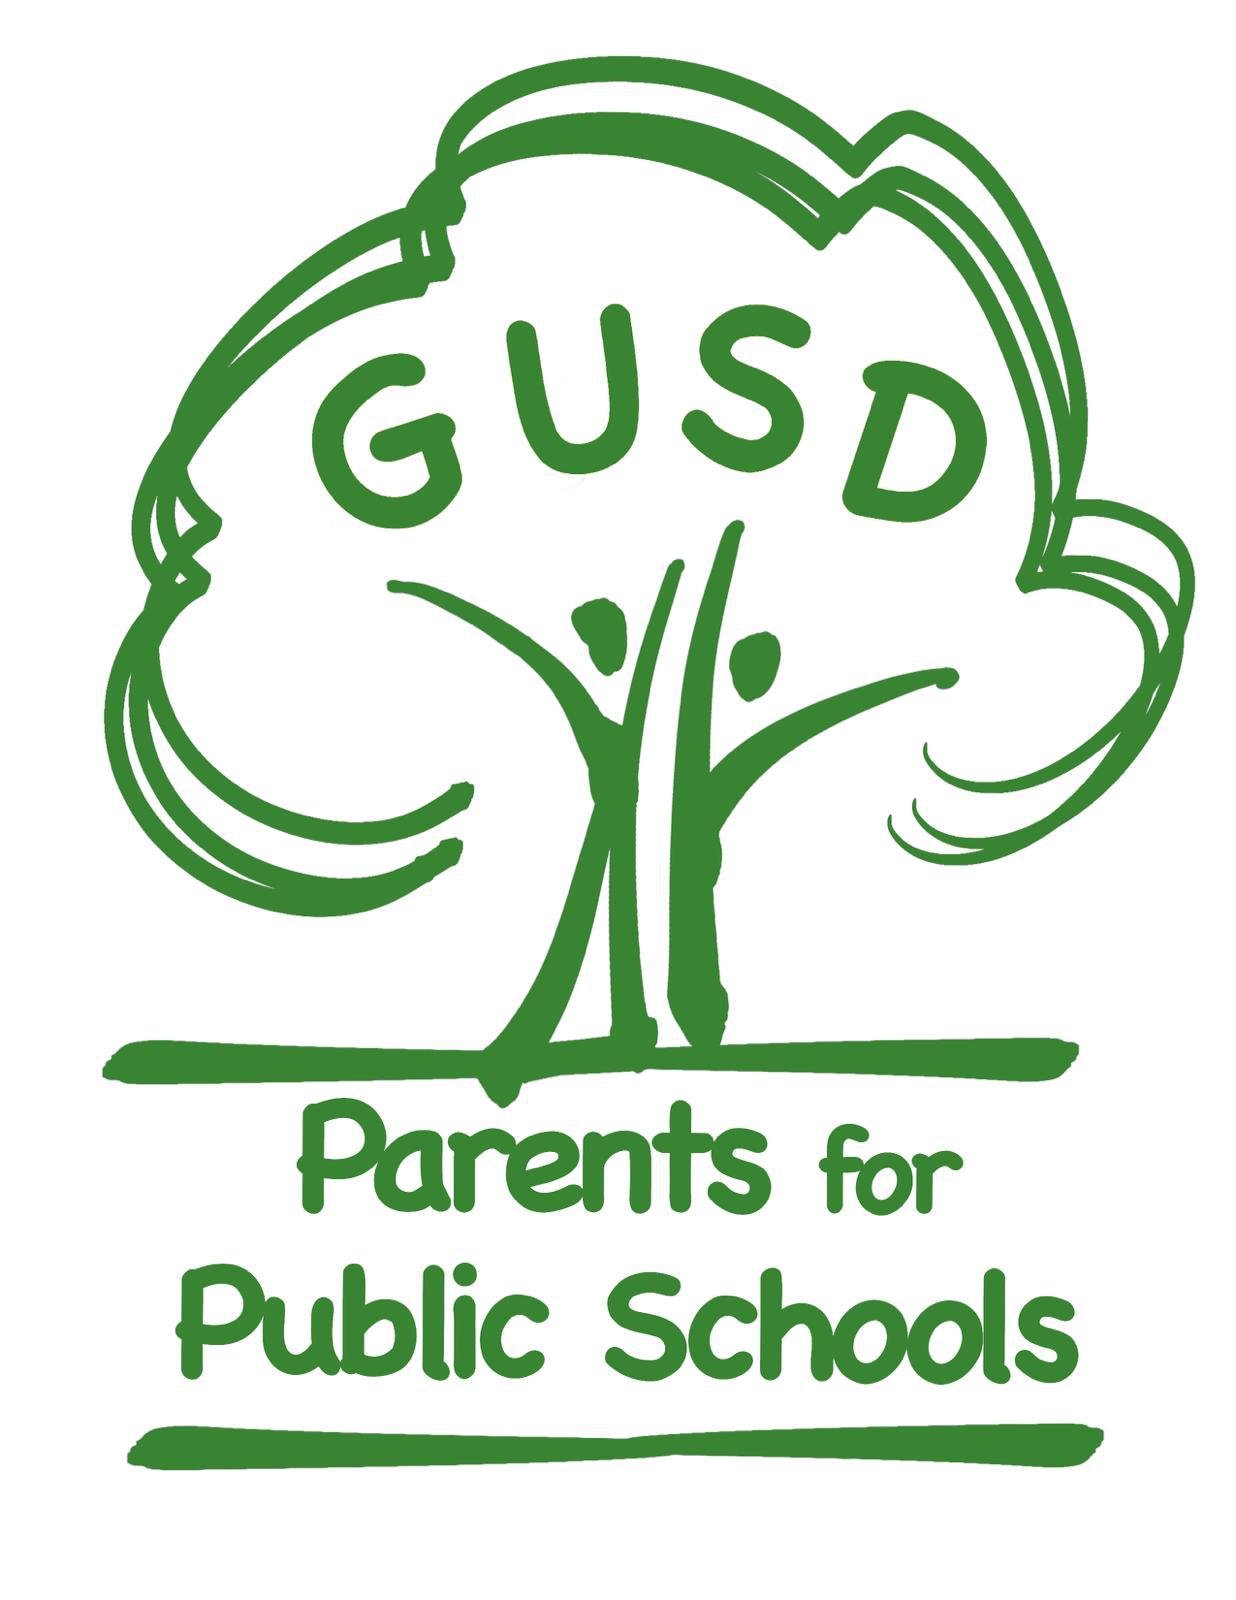 GUSD Parents for Public Schools